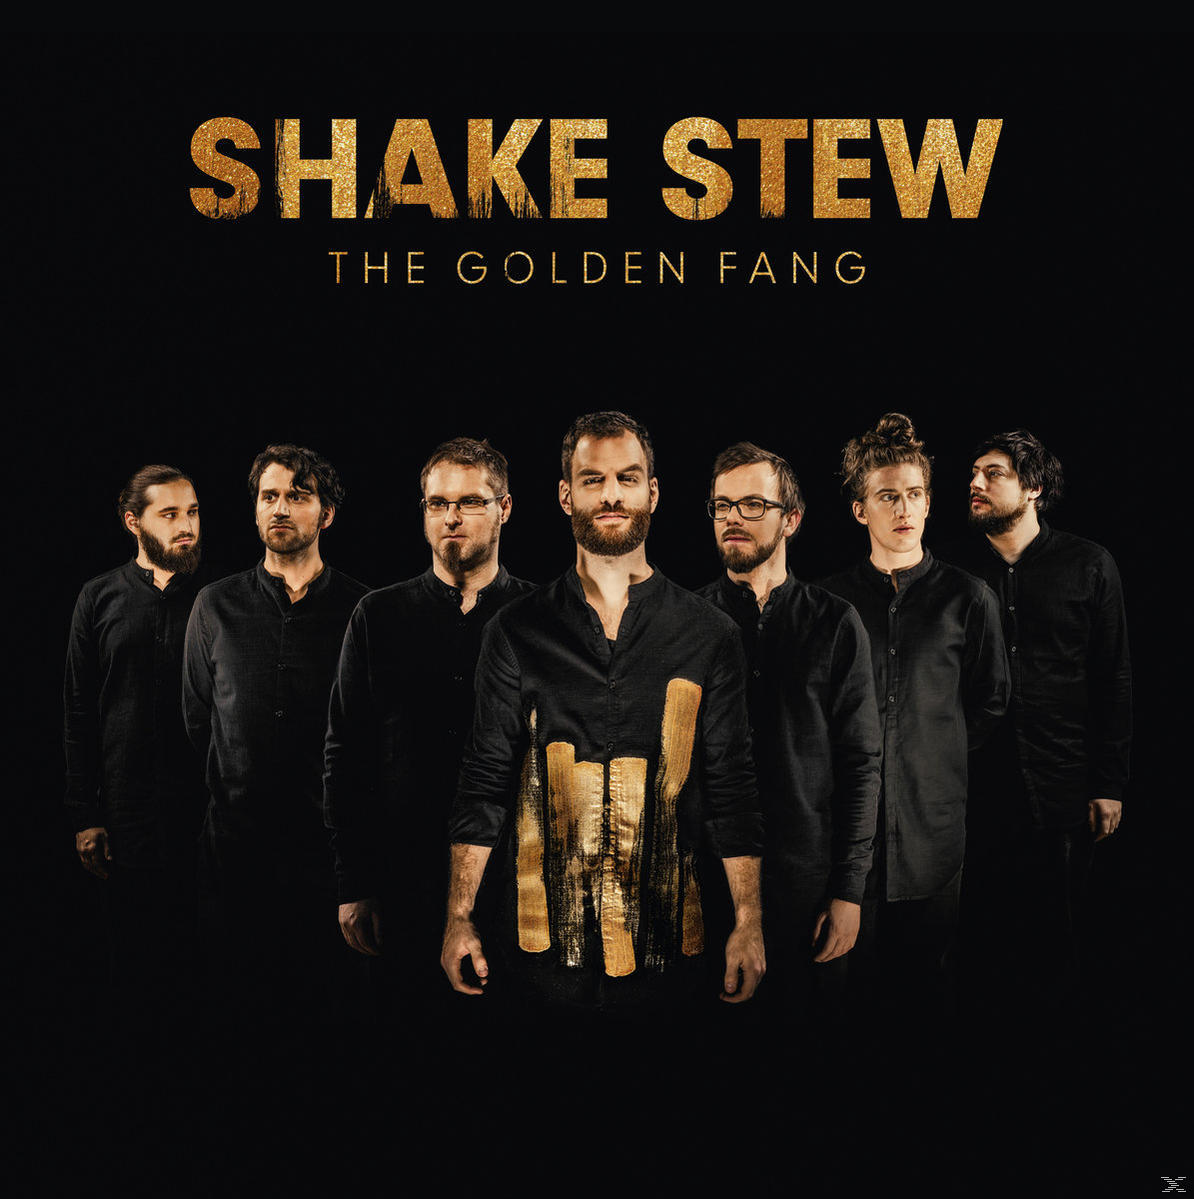 Fang golden The - Golden - (Ltd., Stew Shake (Vinyl) Vinyl)